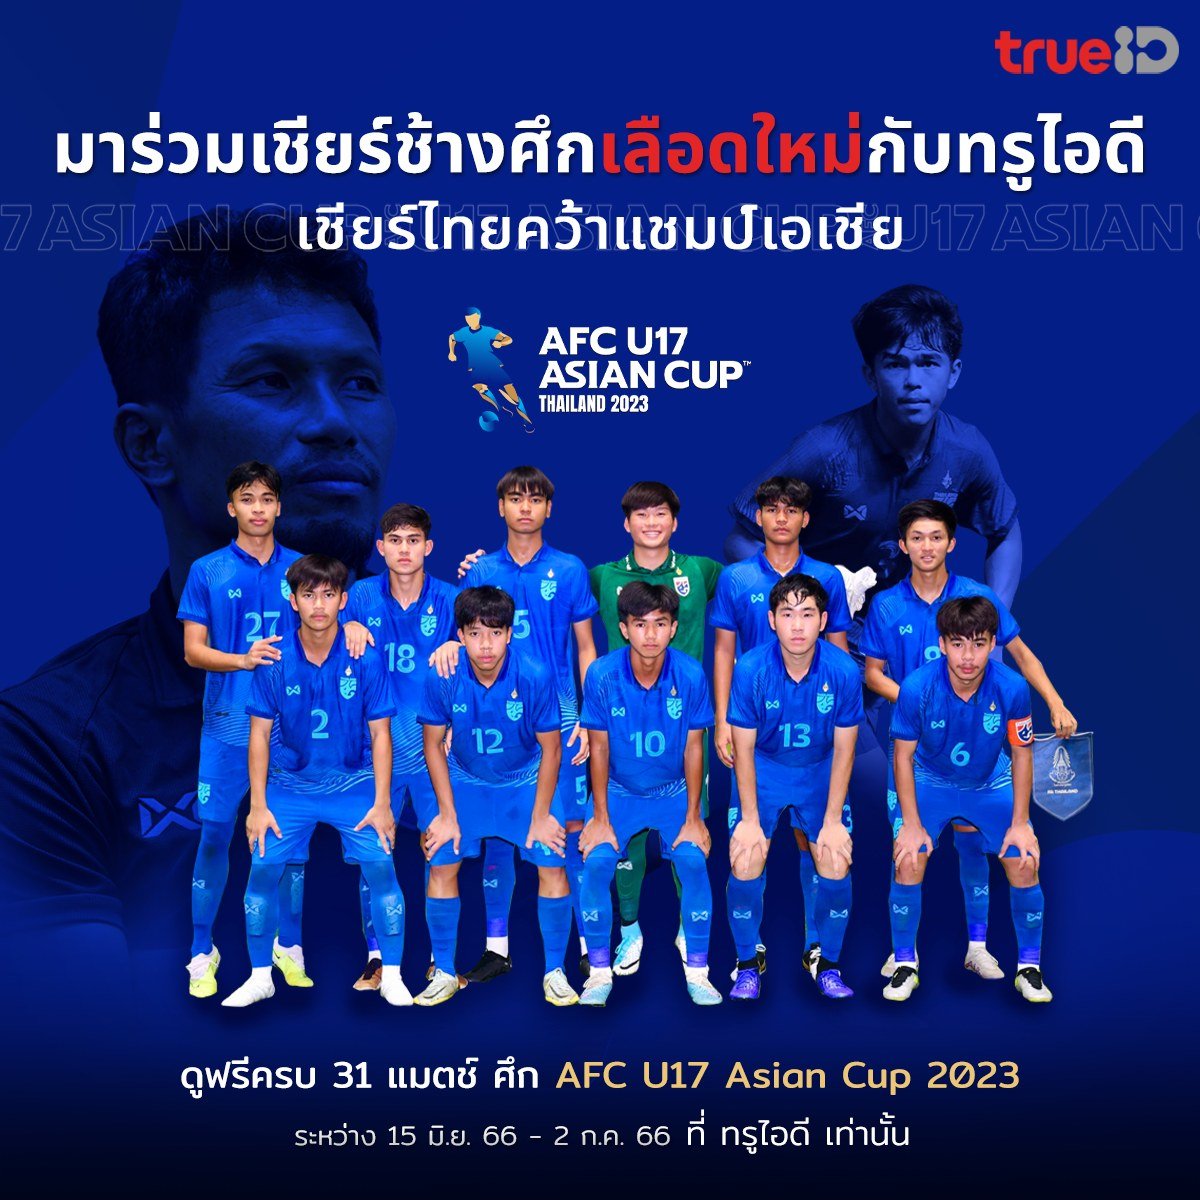 เริ่ม 15 มิ.ย. นี้ AFC U-17 Asian Cup ที่ทรูไอดี 
#AFC #AFCU17 #TrueID